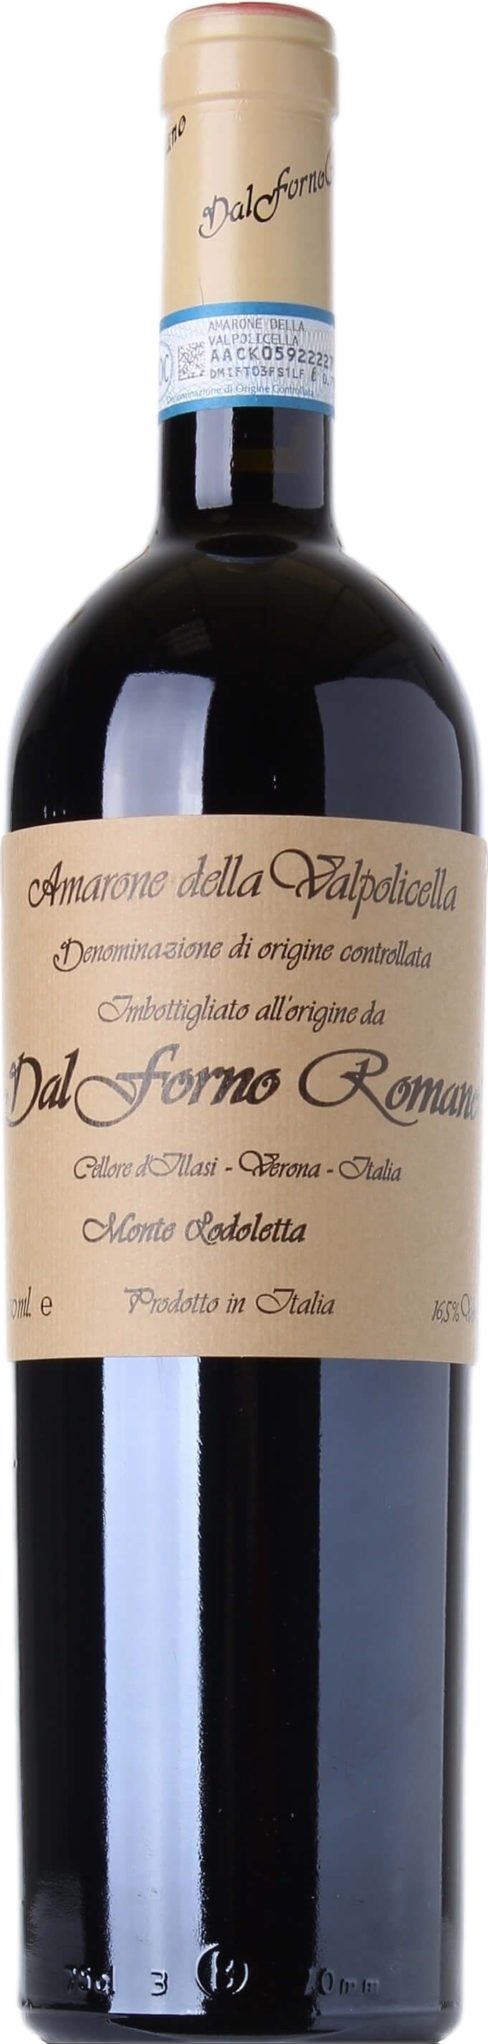 for Dell günstig Kaufen-Dal Forno Romano Amarone della Valpolicella Monte Lodoletta 2017. Dal Forno Romano Amarone della Valpolicella Monte Lodoletta 2017 . 